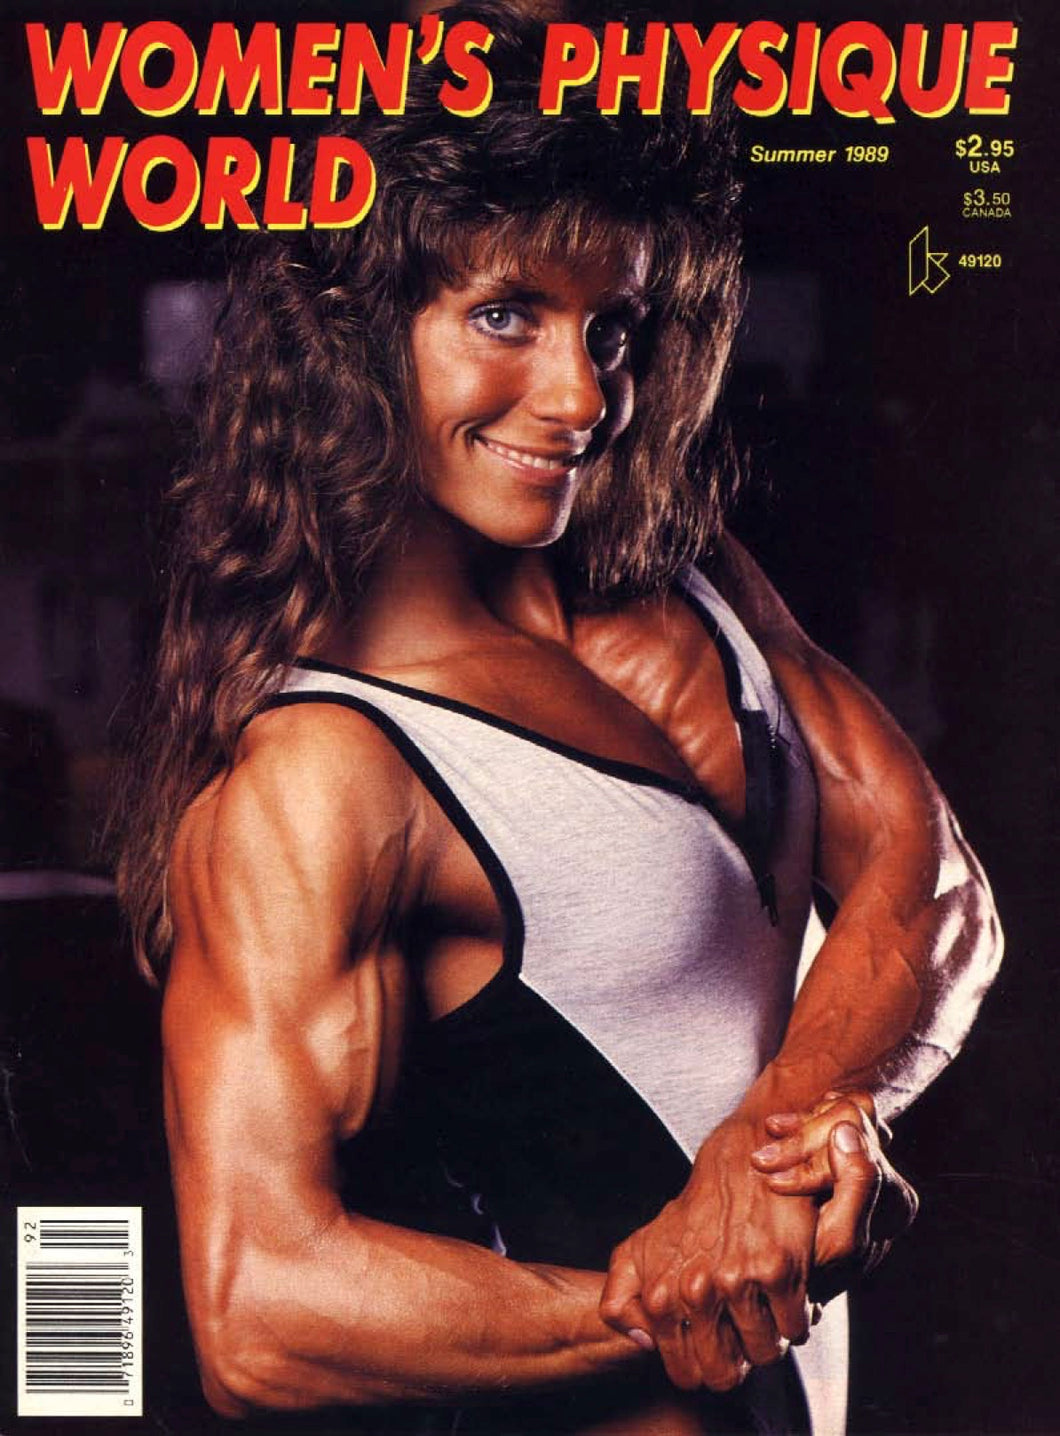 WPW Summer 1989 Magazine Issue [Digital Download]